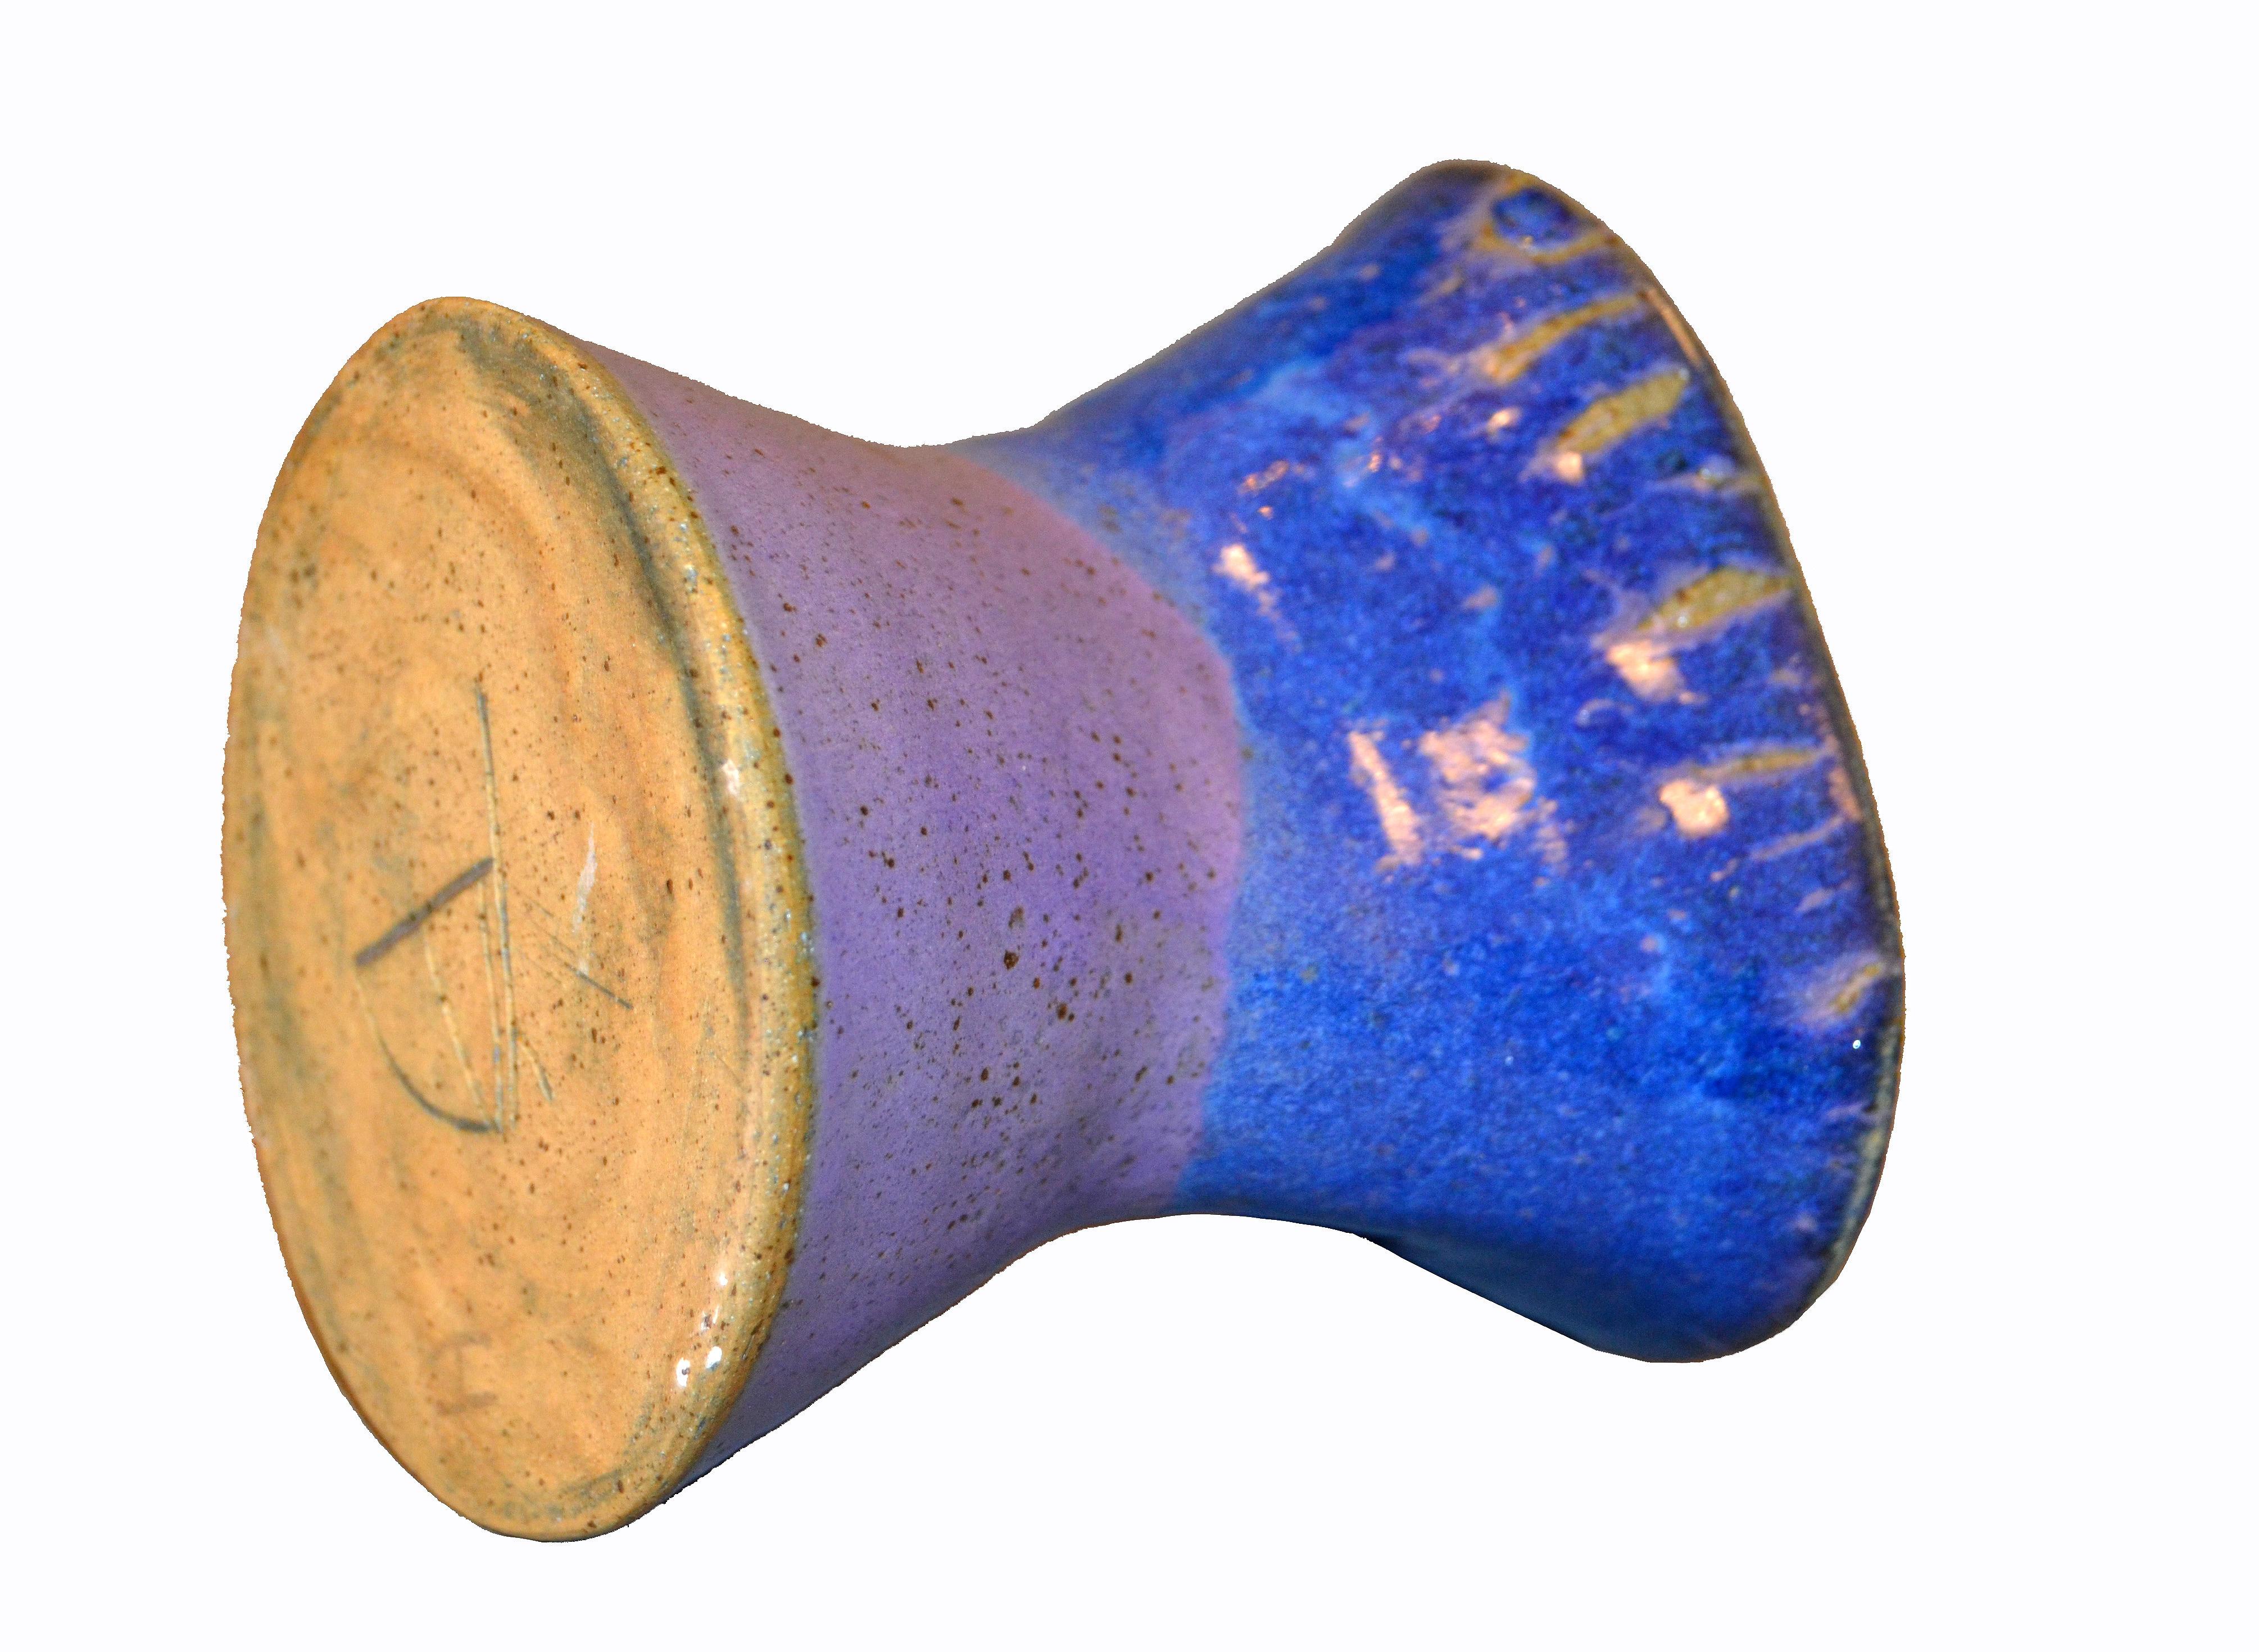 Signed Ann Newberry Glaze Pottery Purple, Blue & Gray Ceramic Bowl Vase Vessel 2